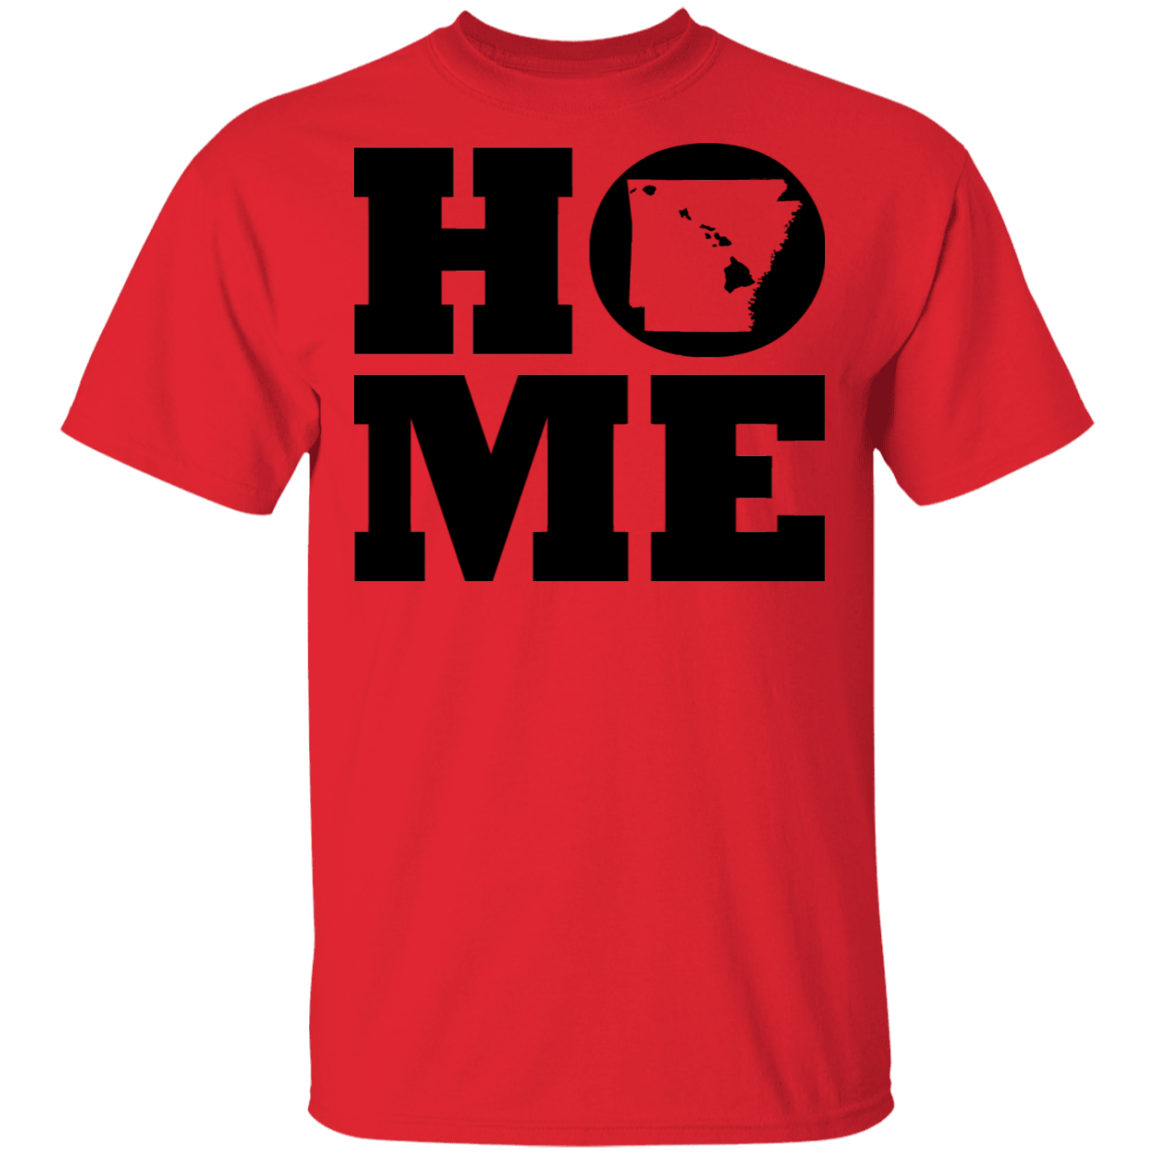 Home Roots Hawai'i and Arkansas T-Shirt